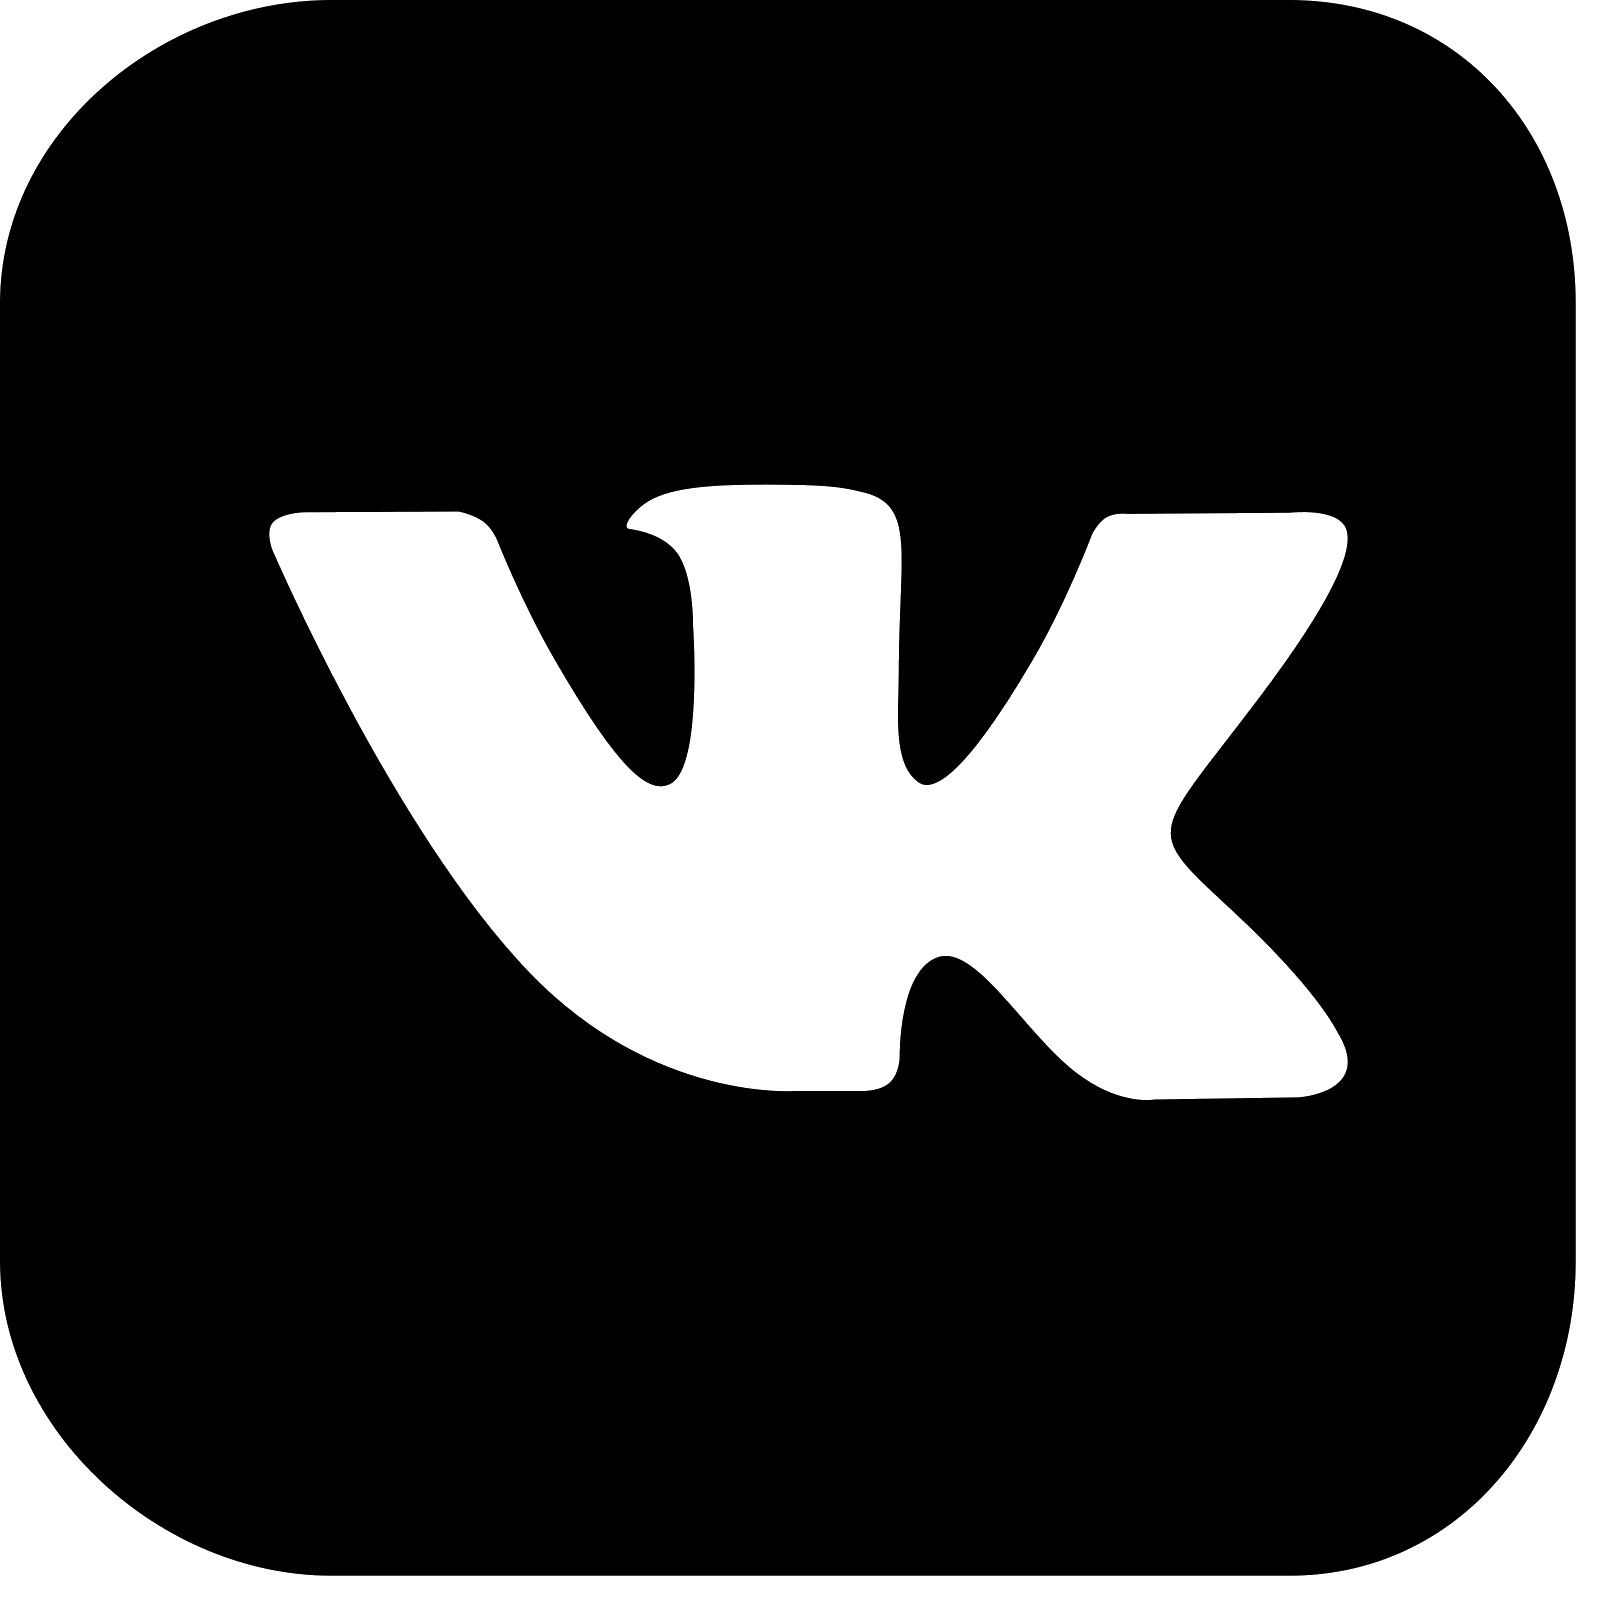 Логотип ВК. Маленький значок ВК. Логотип ВК черный. Логотип ВК без фона.